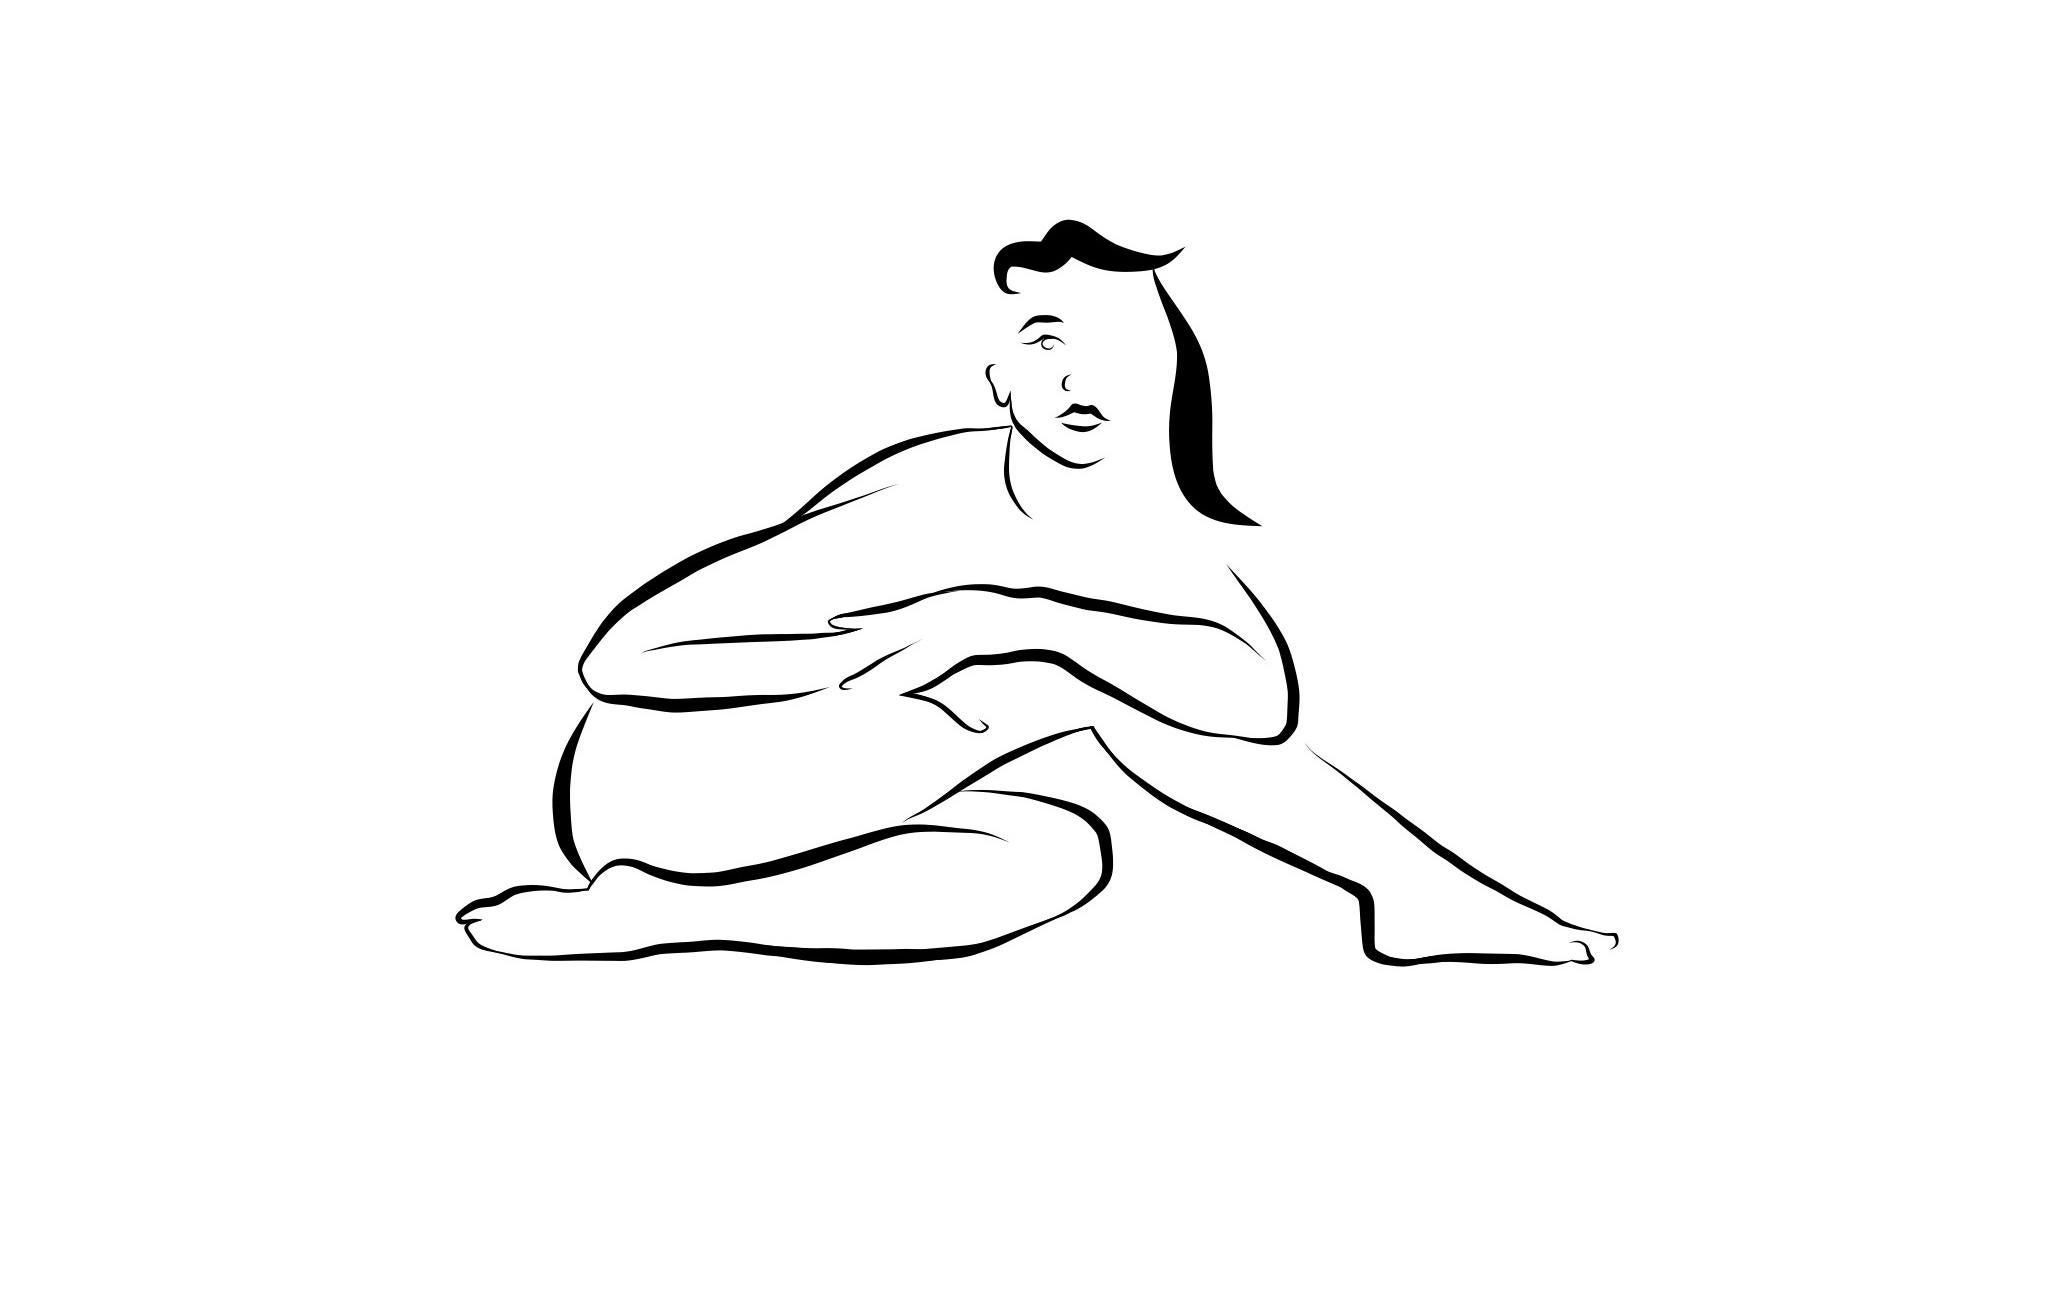 Michael Binkley Nude Print – Haiku #14, 1/50  Digitale Vector Zeichnung B&W sitzende weibliche Aktfigur